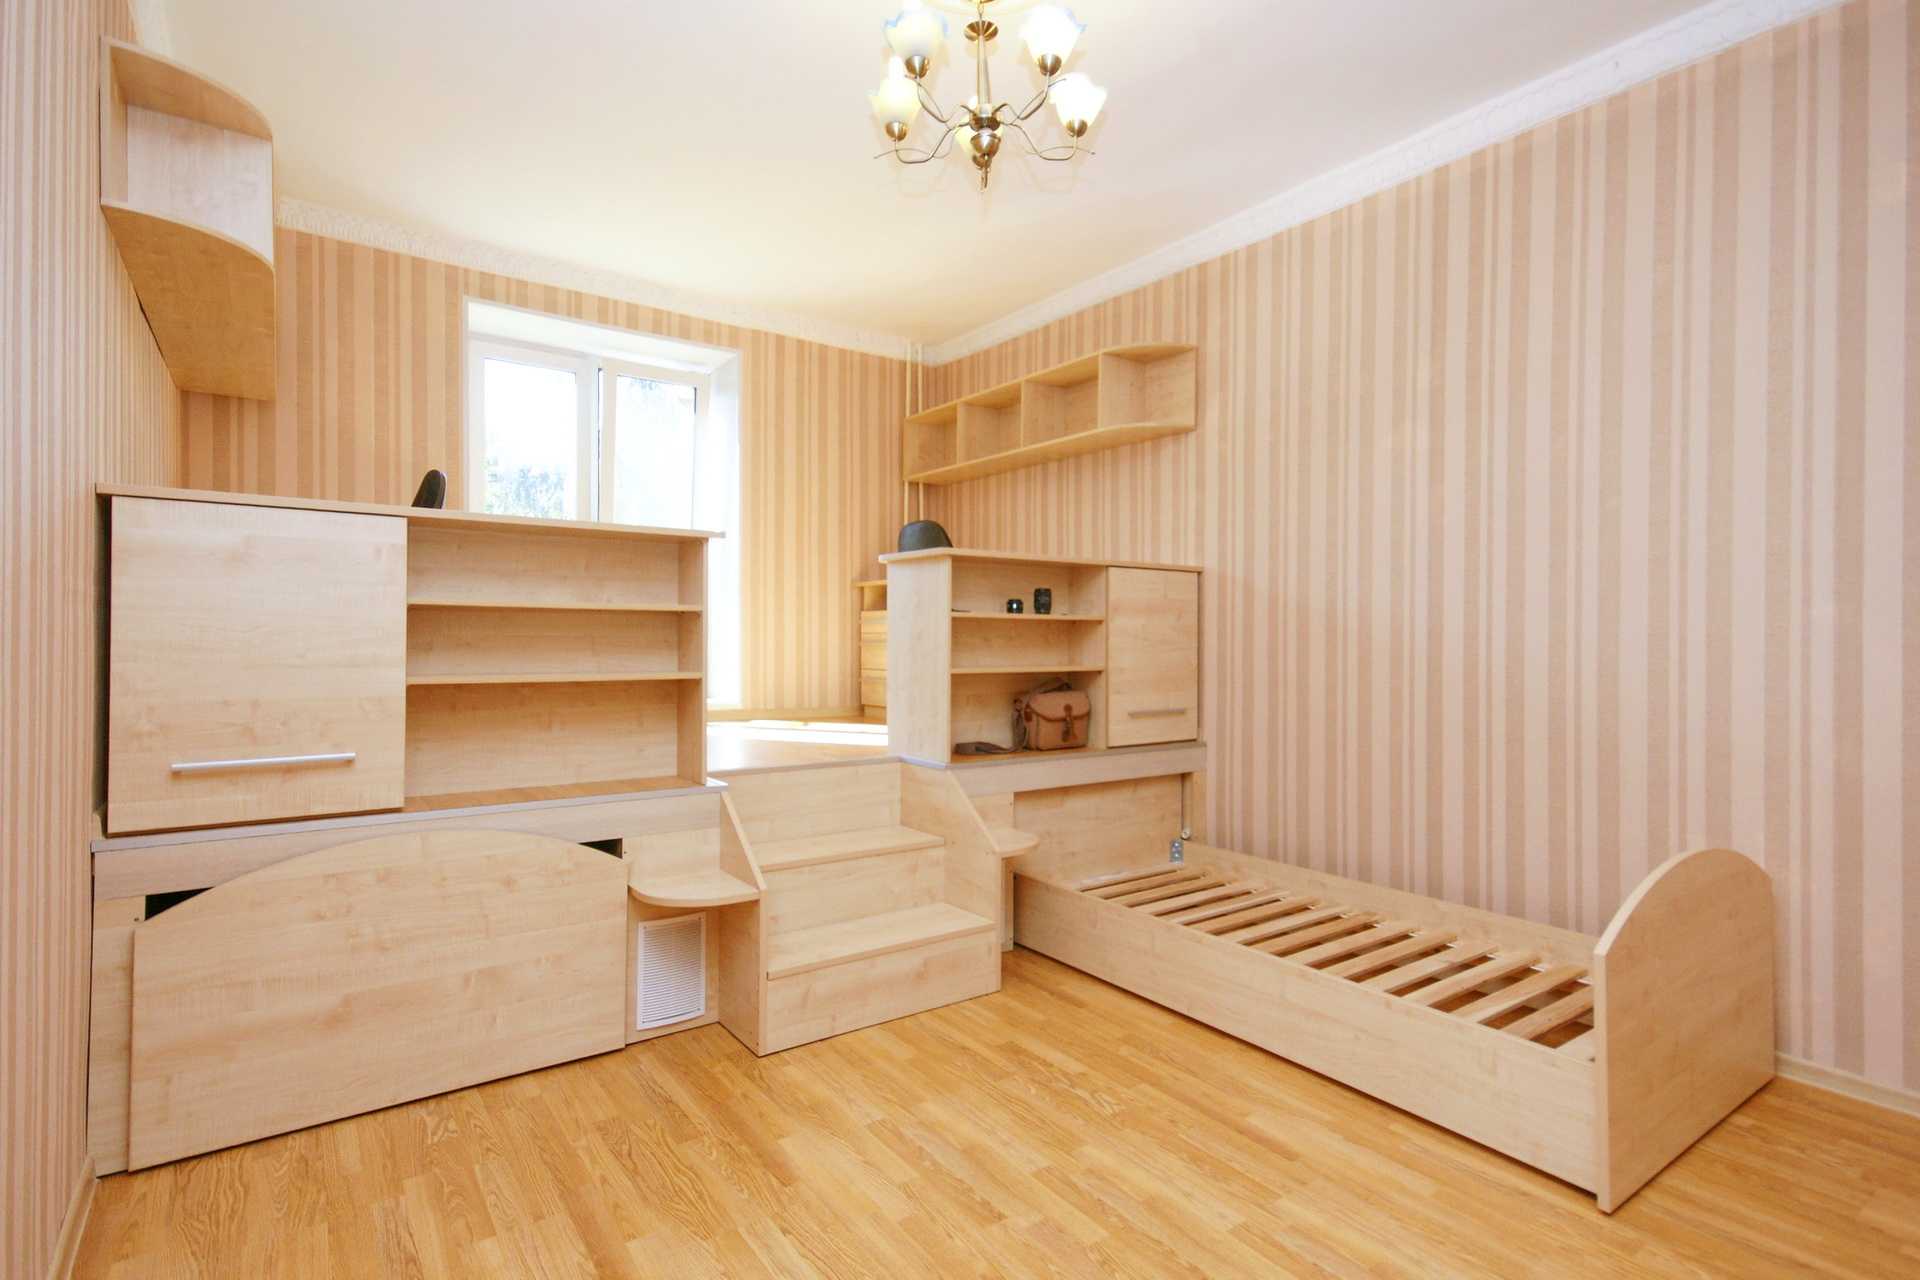 Варианты расстановки мебели для детской комнаты для двоих детей